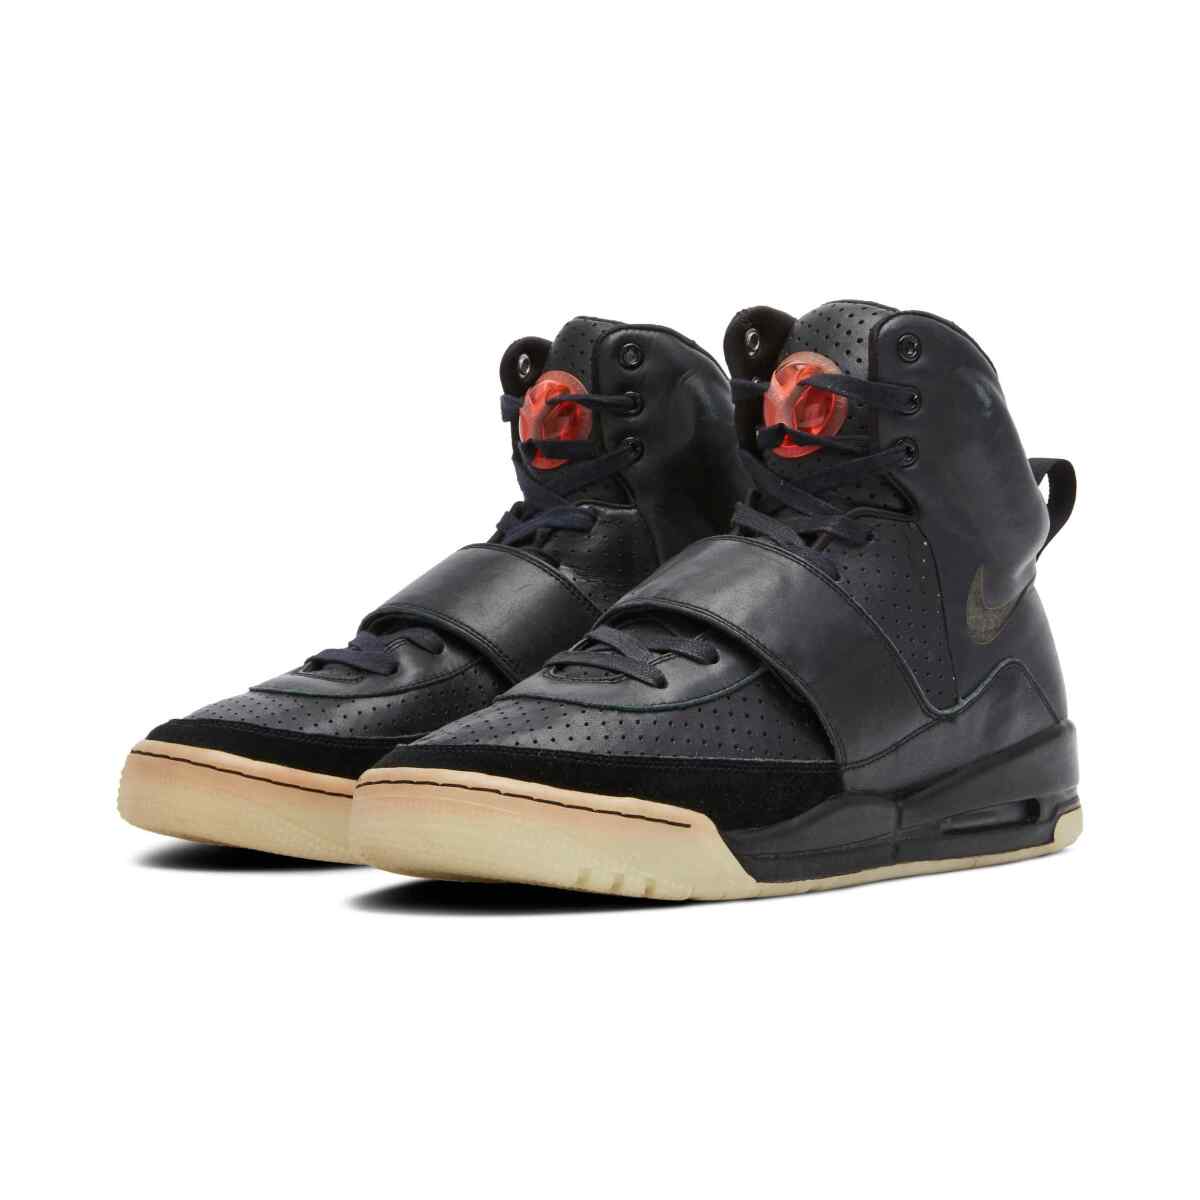 Black Air Yeezy 1 sneakers.